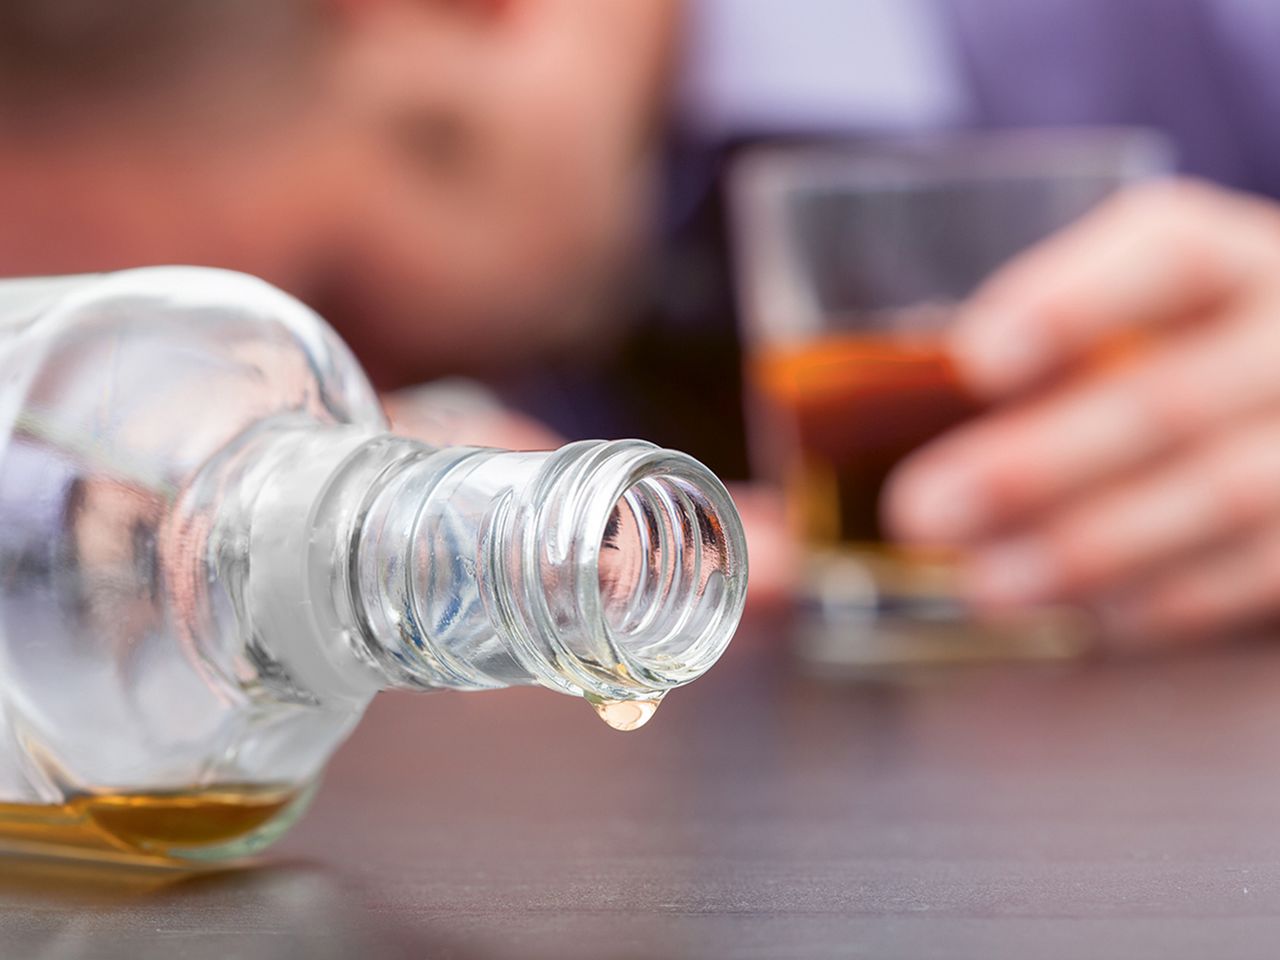 Der problematische Alkoholkonsum älterer Menschen wird oft verharmlost.